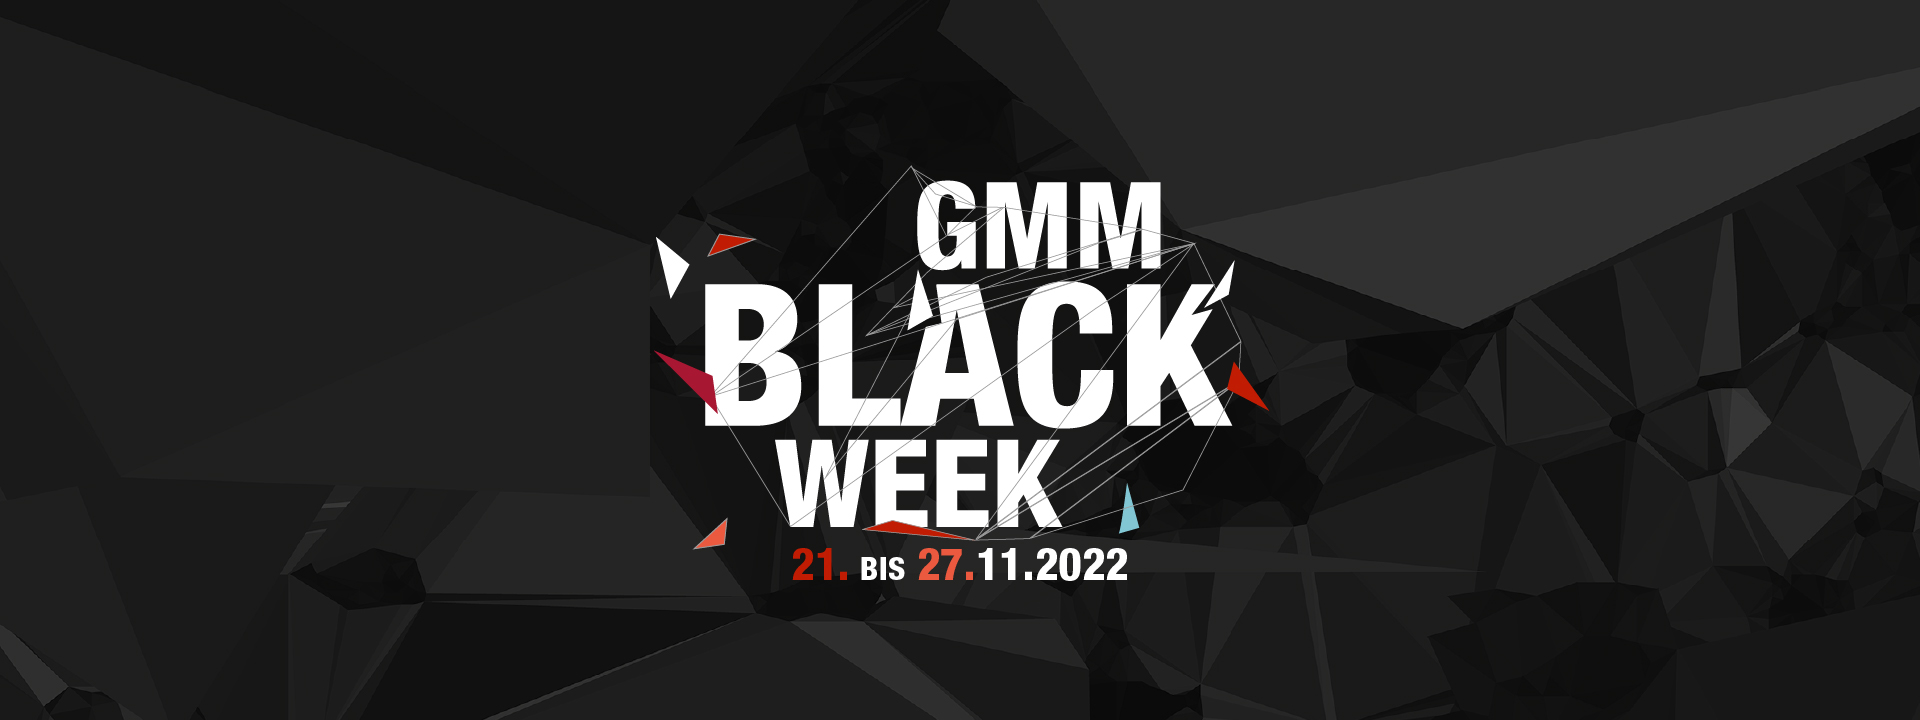 Black Week GENERALI MÜNCHEN MARATHON 2022